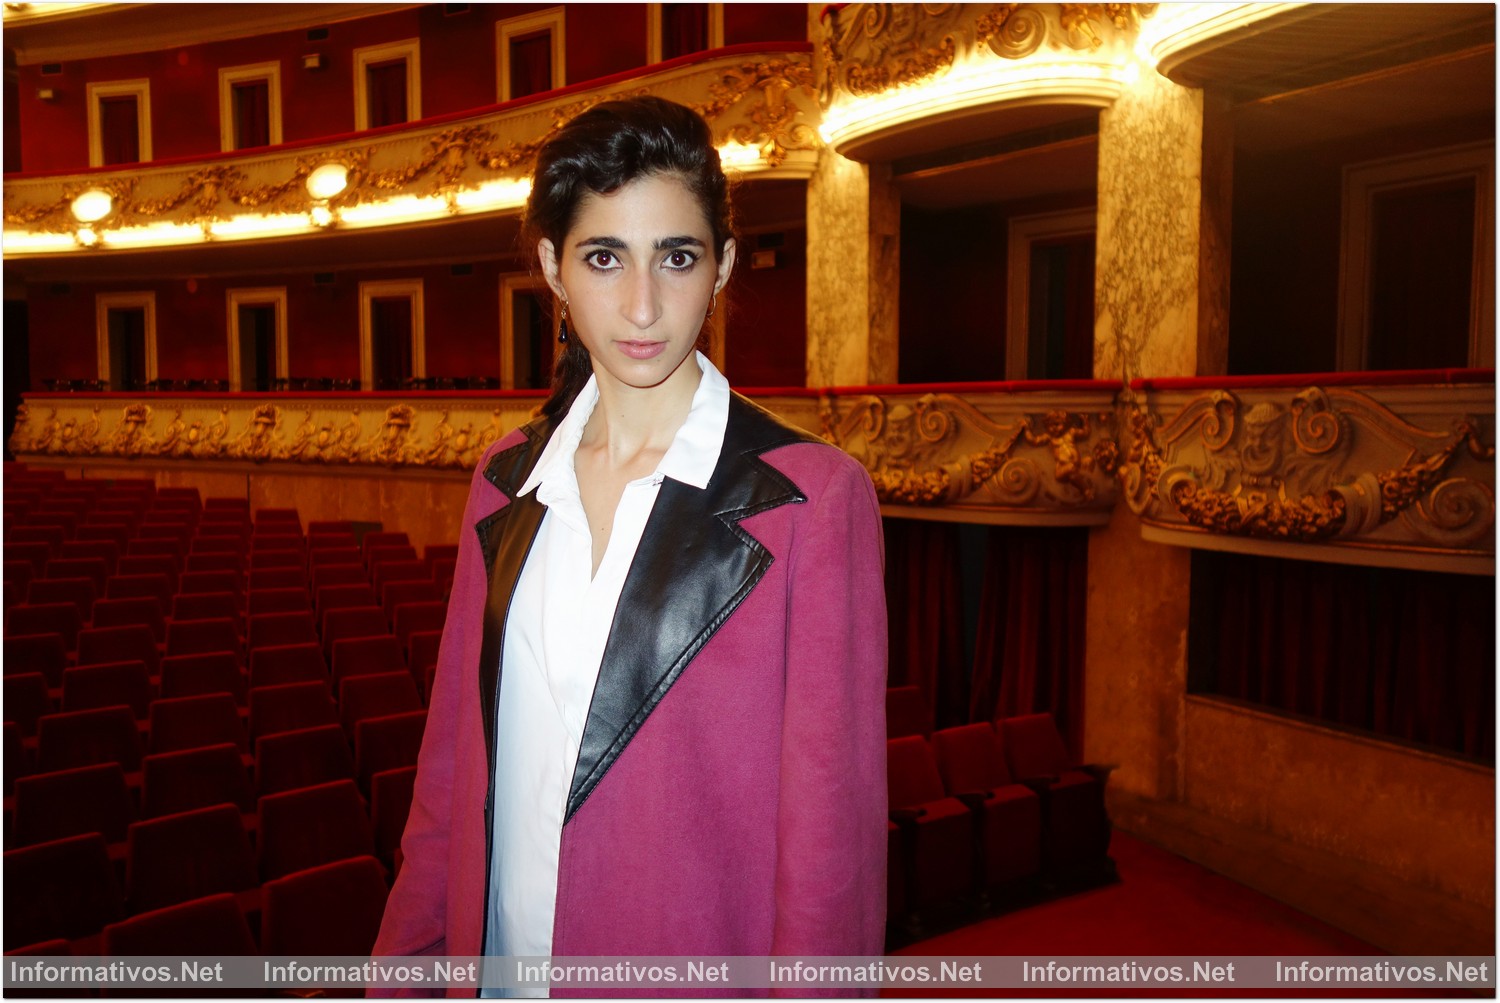 BCN13ABR017.- Presentación en el Teatro Tívolí de Barcelona del espectáculo "Drac Pack". Alba Flores